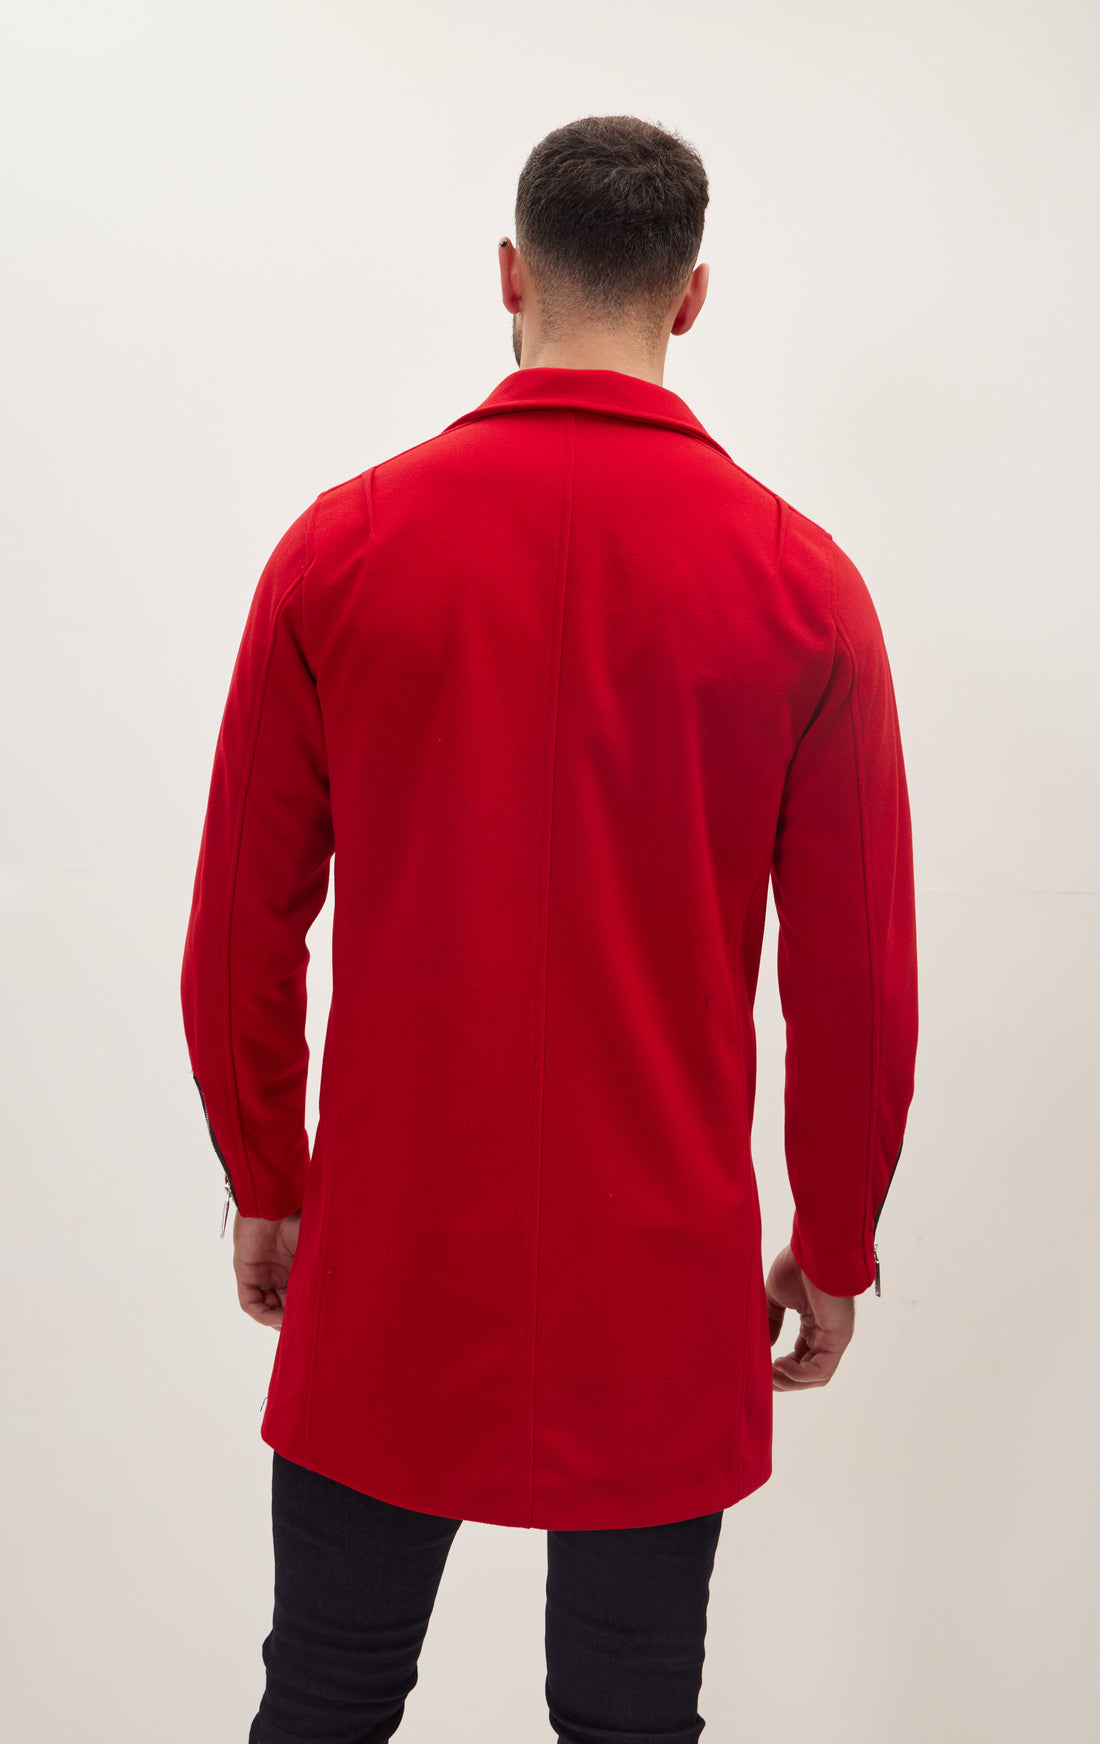 Asymmetrical Zipper Closure Coat - Red